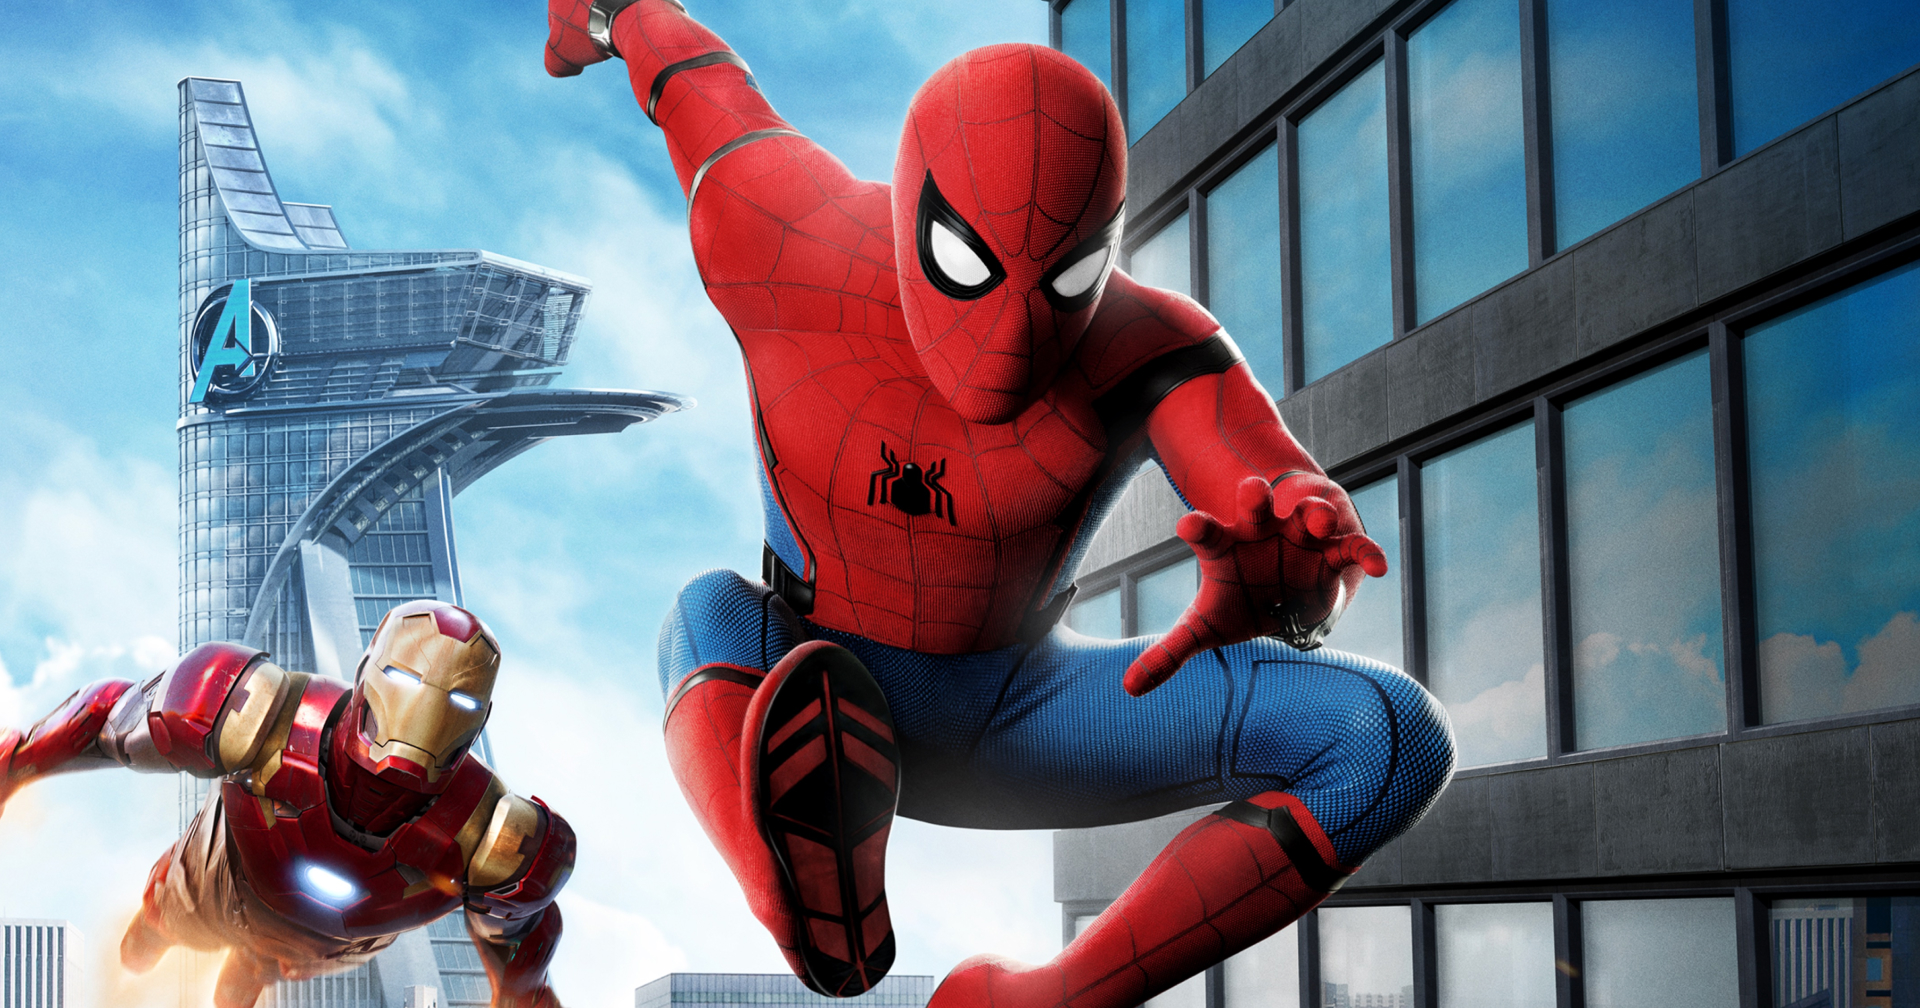 โปรดิวเซอร์ยืนยัน Spider-Man ยังได้ไปต่อในจักรวาล Marvel อย่างน้อย 3 เรื่อง